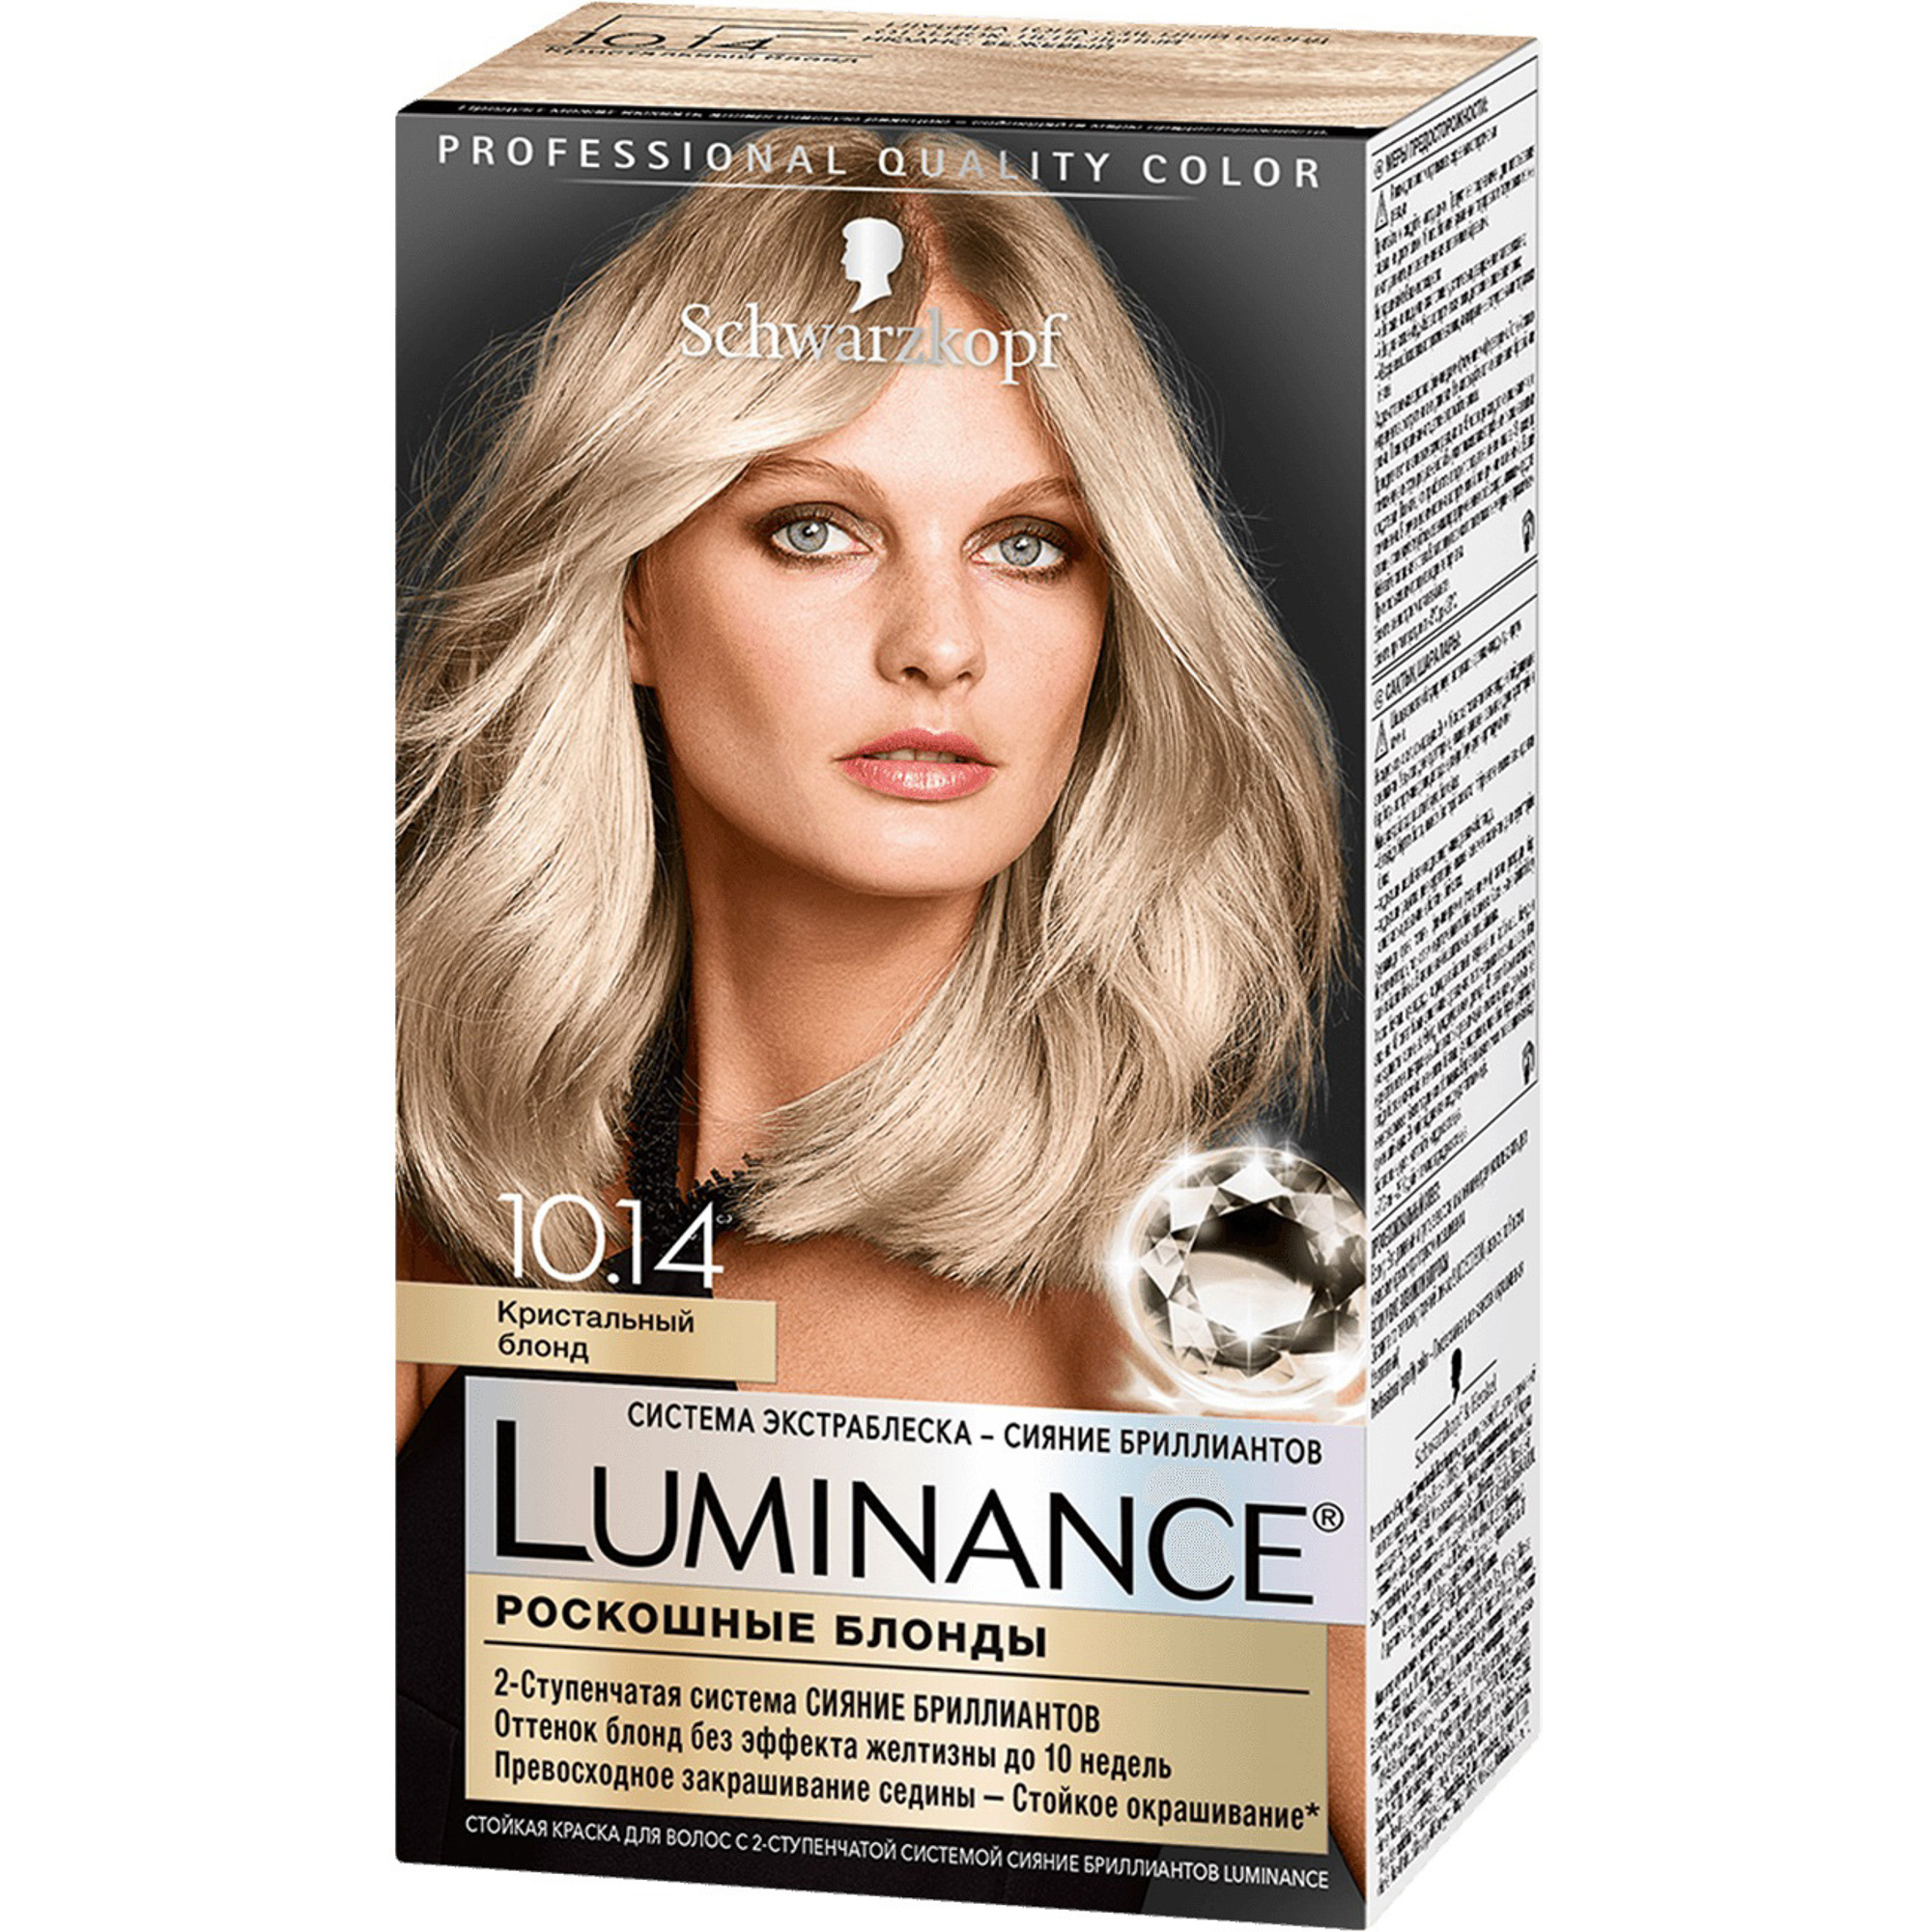 Краска для волос Schwarzkopf Luminance Color 10.14 Кристальный блонд краска для волос luminance 10 14 кристальный блонд